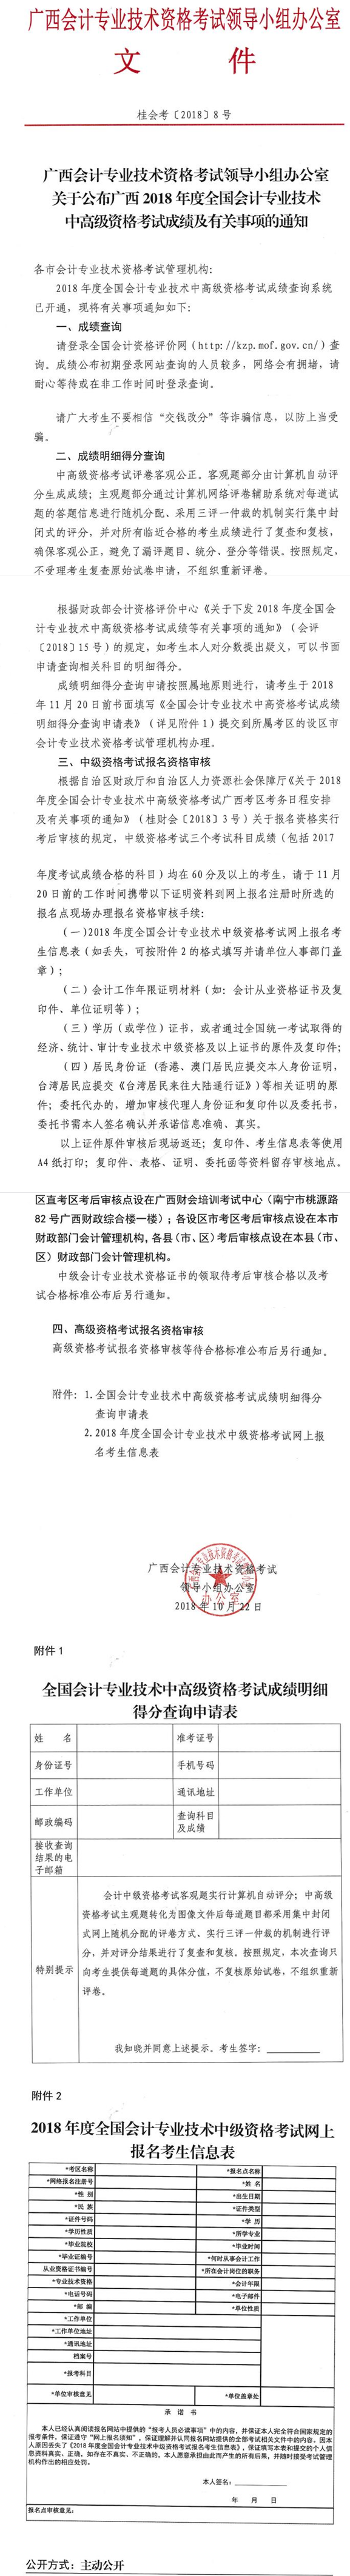 广西柳州2018年中级会计师考试资格审核通知